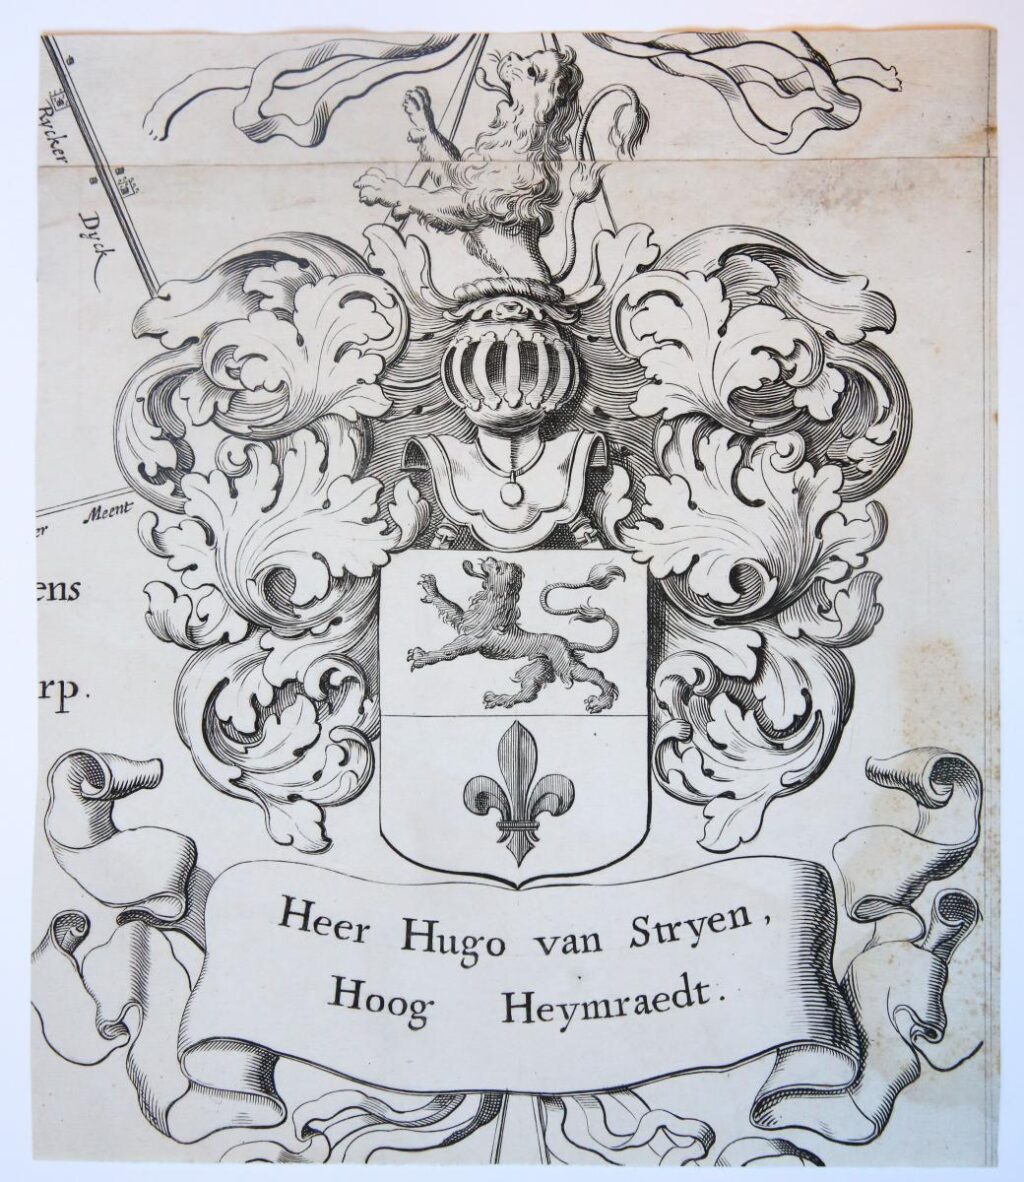 Wapenkaart/Coat of Arms Stryen (Van).